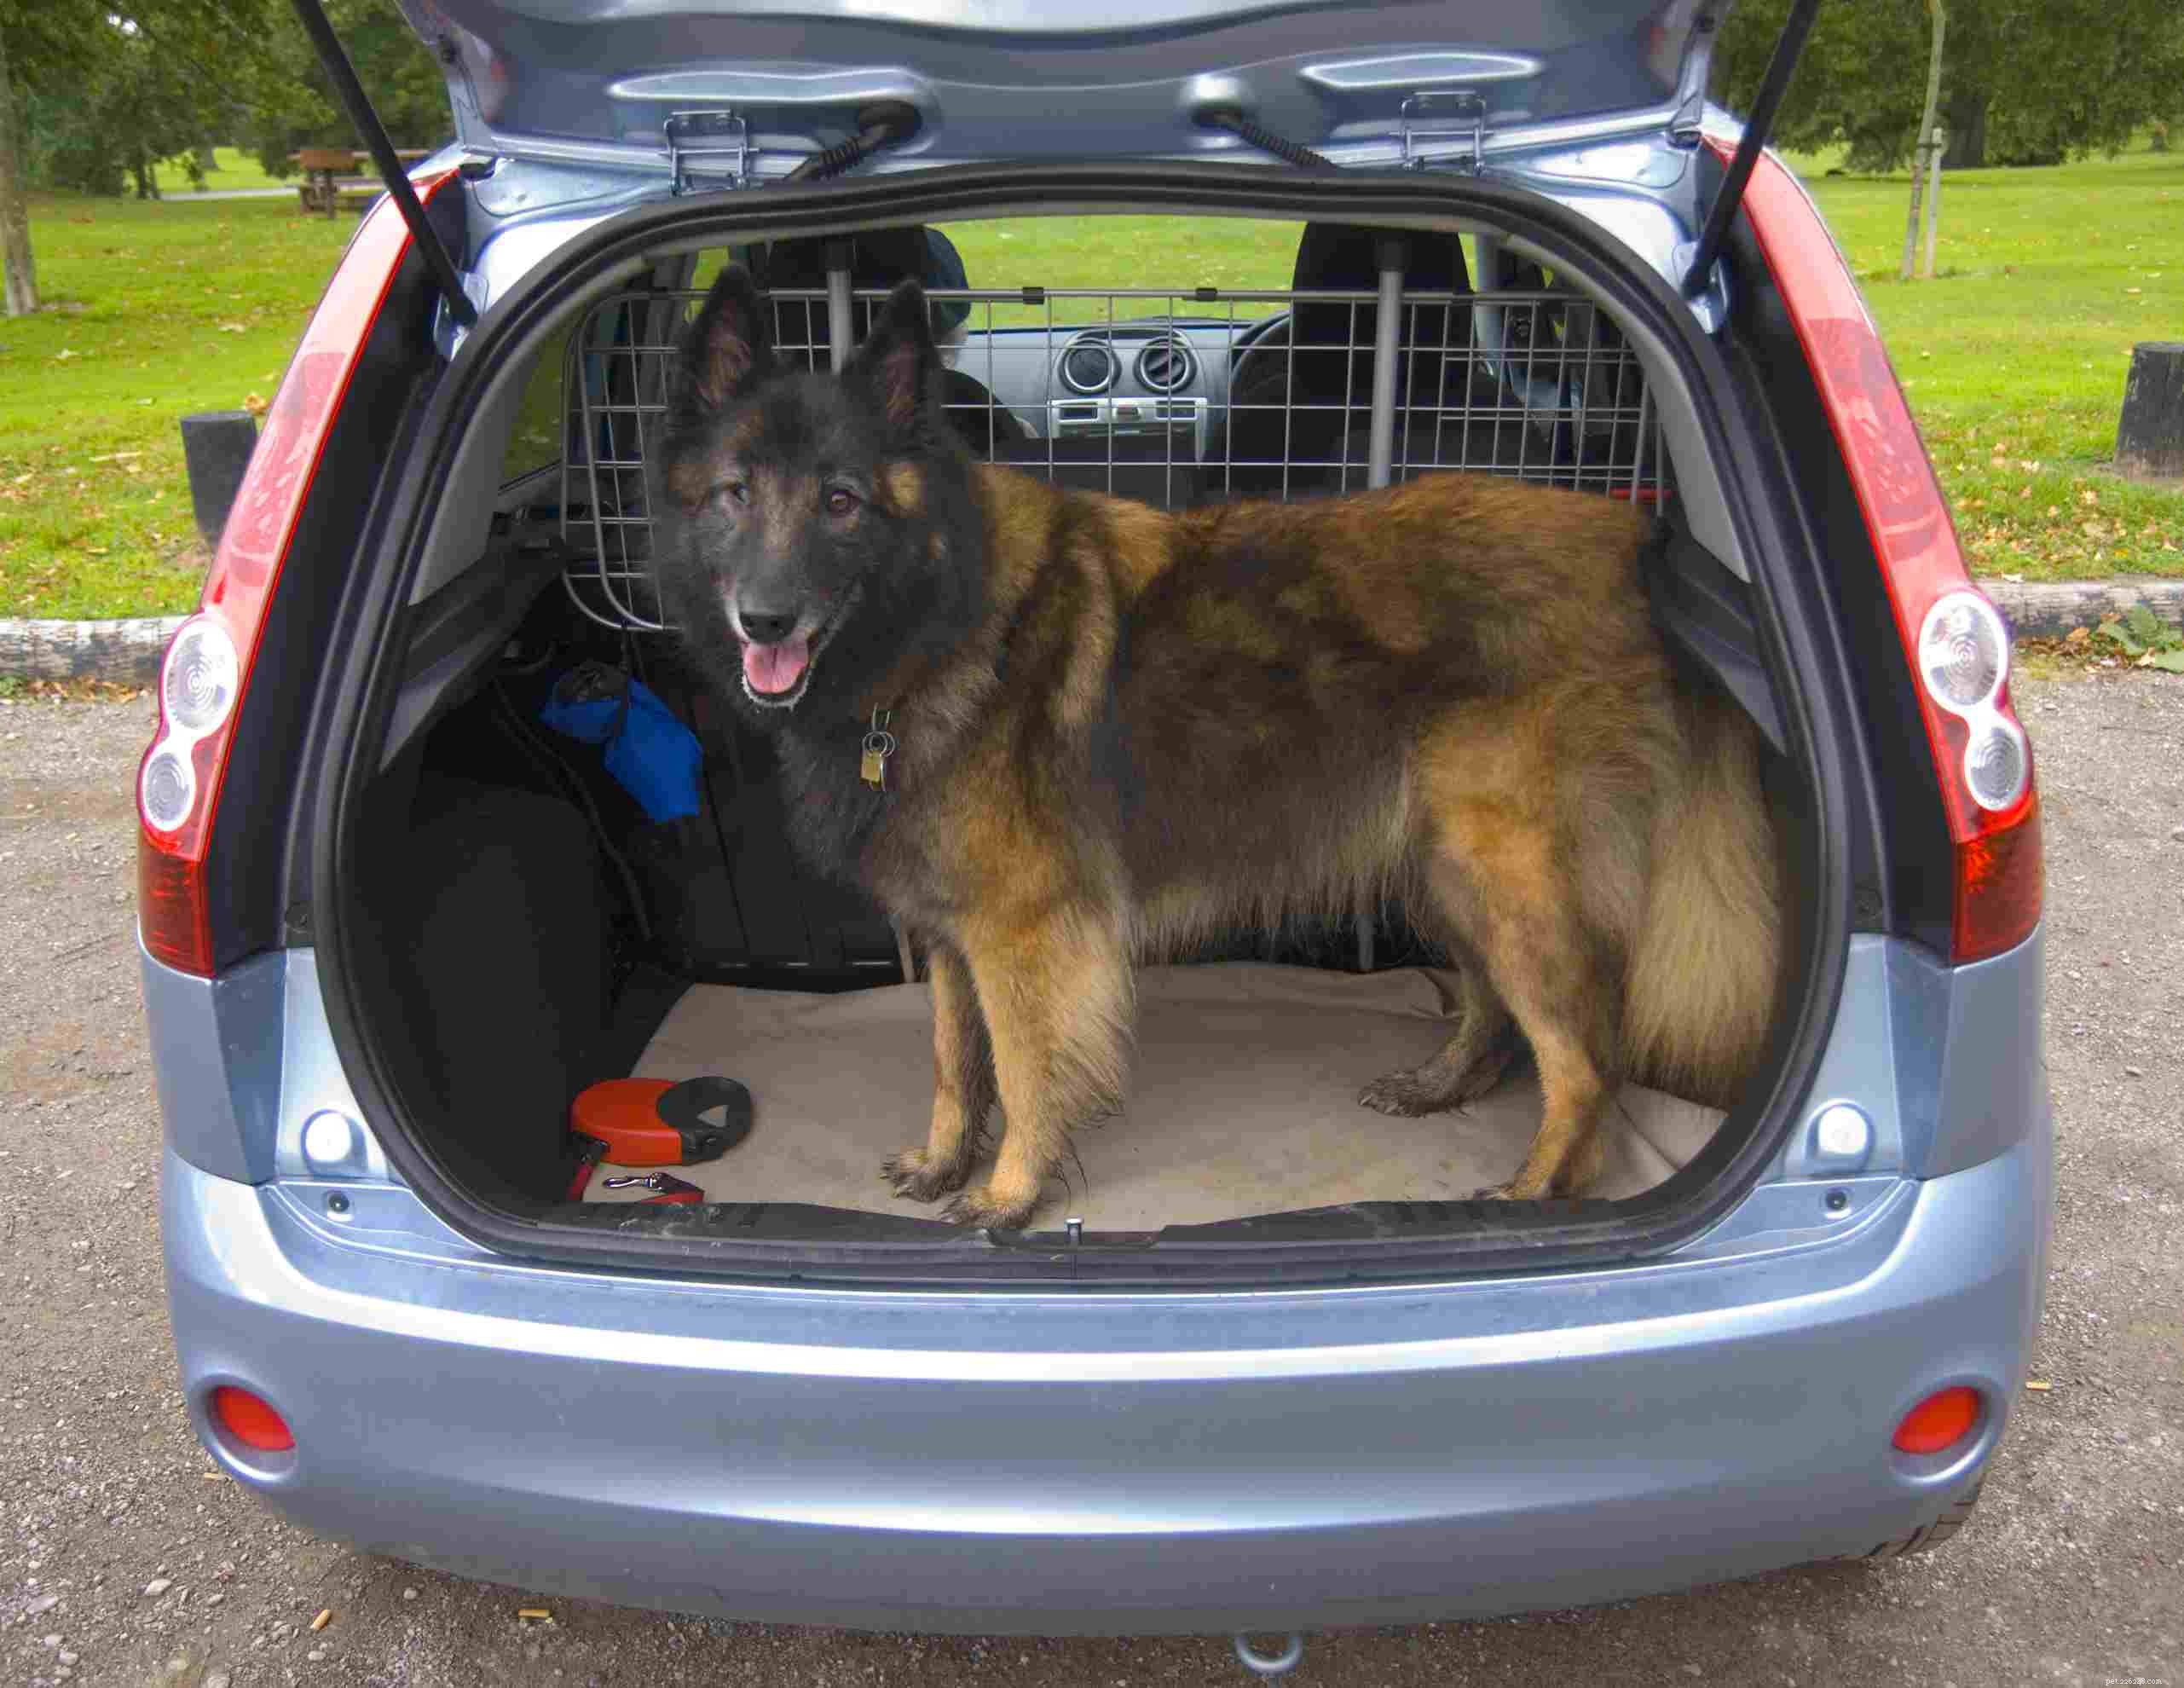 Nejlepší způsob, jak bezpečně omezit psa v autě